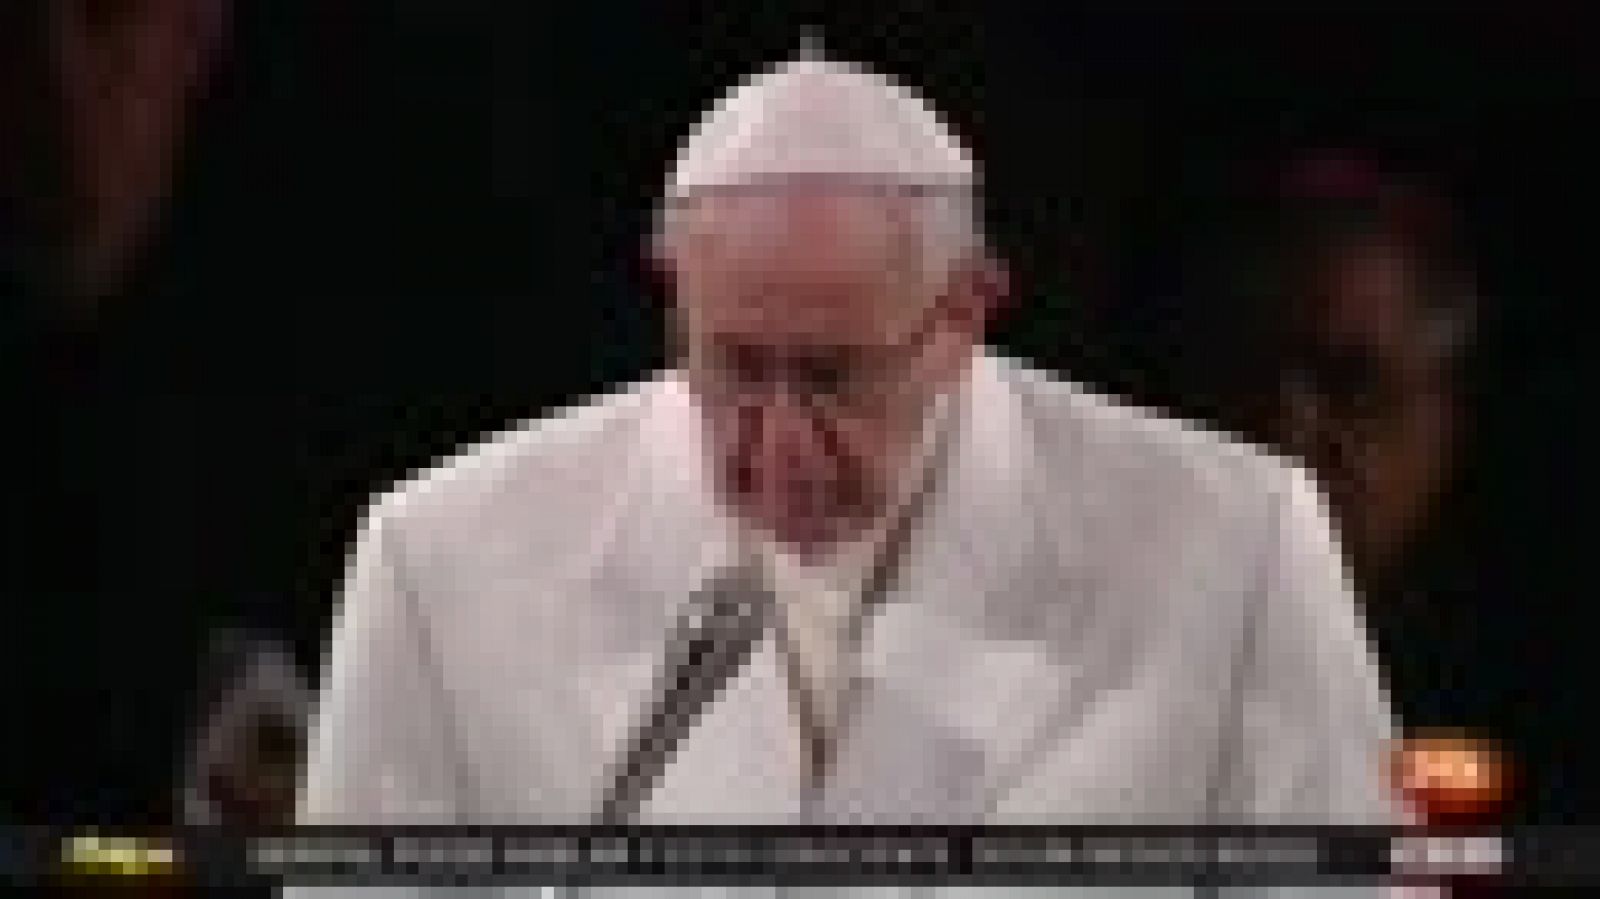 Viernes Santo: el papa Francisco clama "vergüenza" ante un mundo fracturado por la guerra y "devorado por el egoísmo"